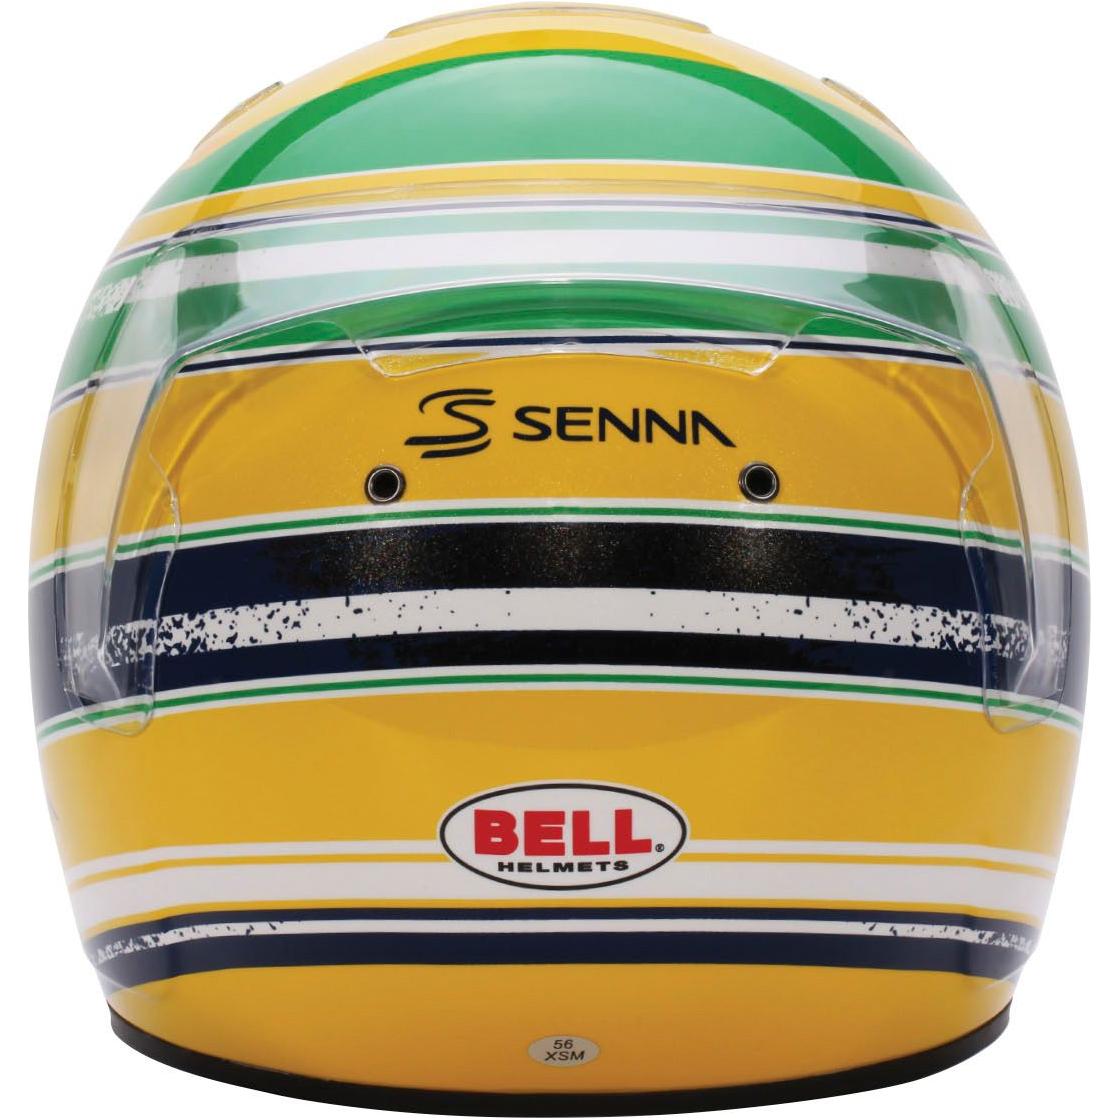 BELL Helmet KC7 CMR Ayrton Senna